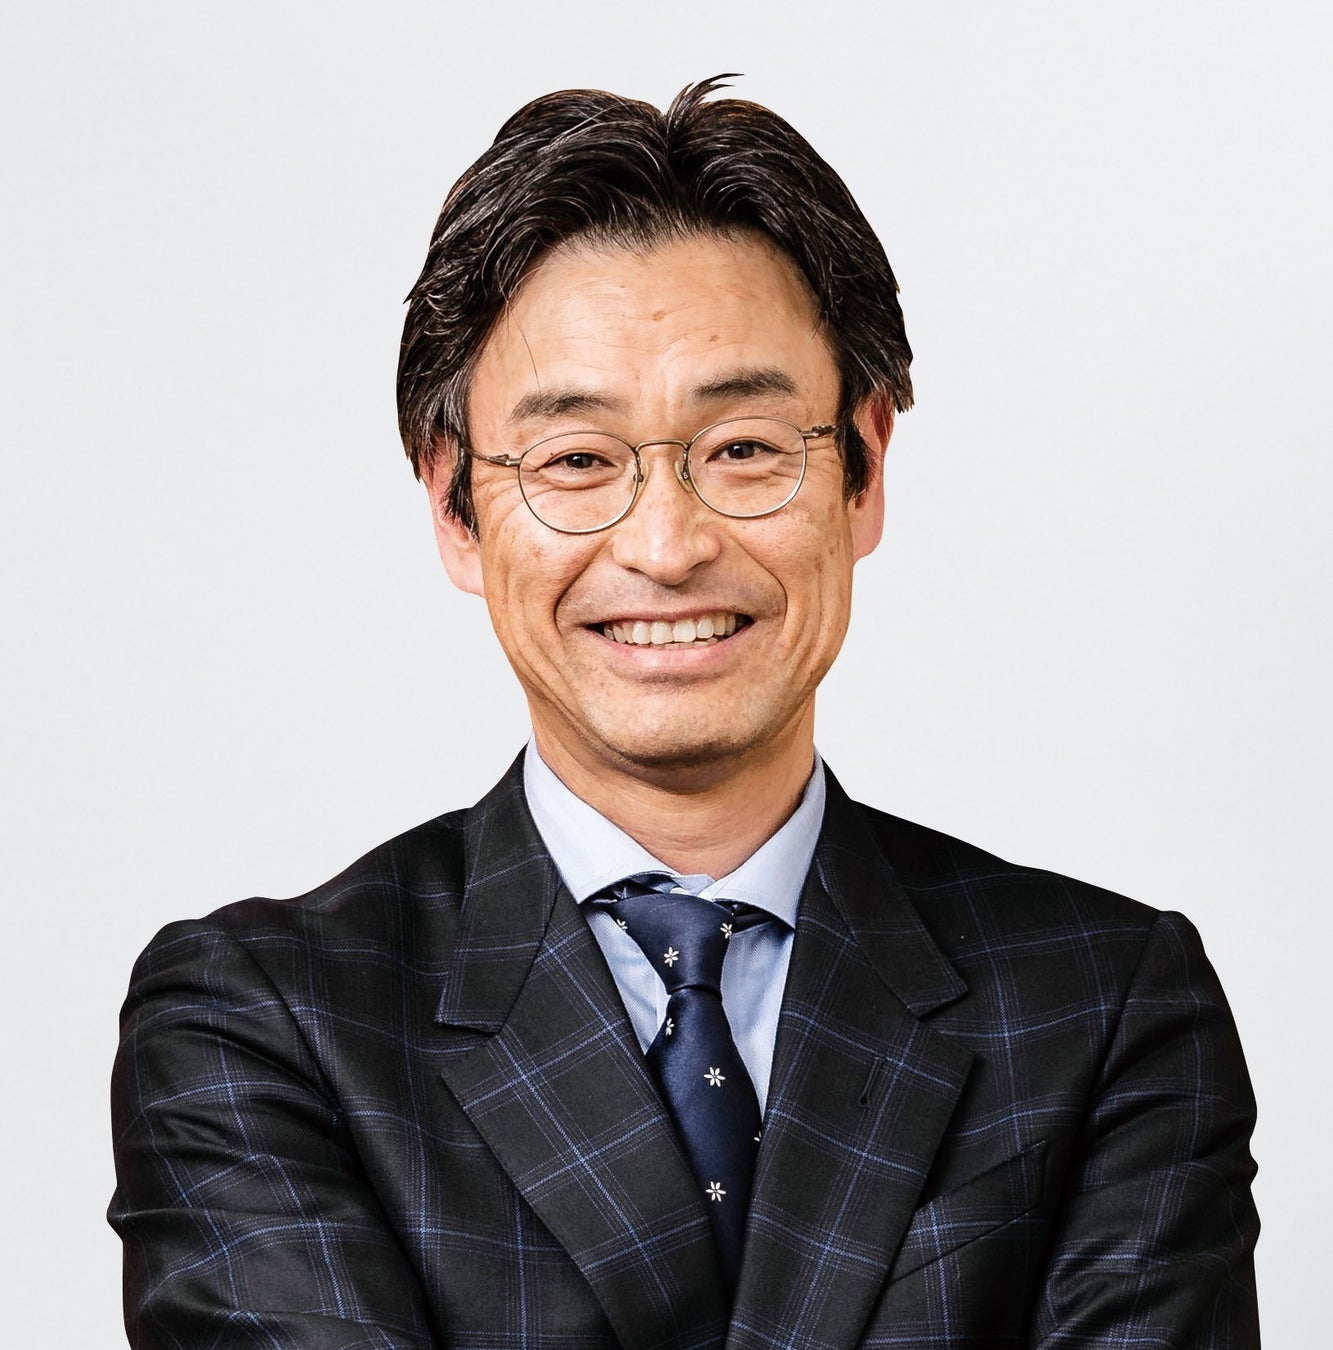 アメリカン・エキスプレス・インターナショナル, Inc. 須藤 靖洋が日本における代表者に就任